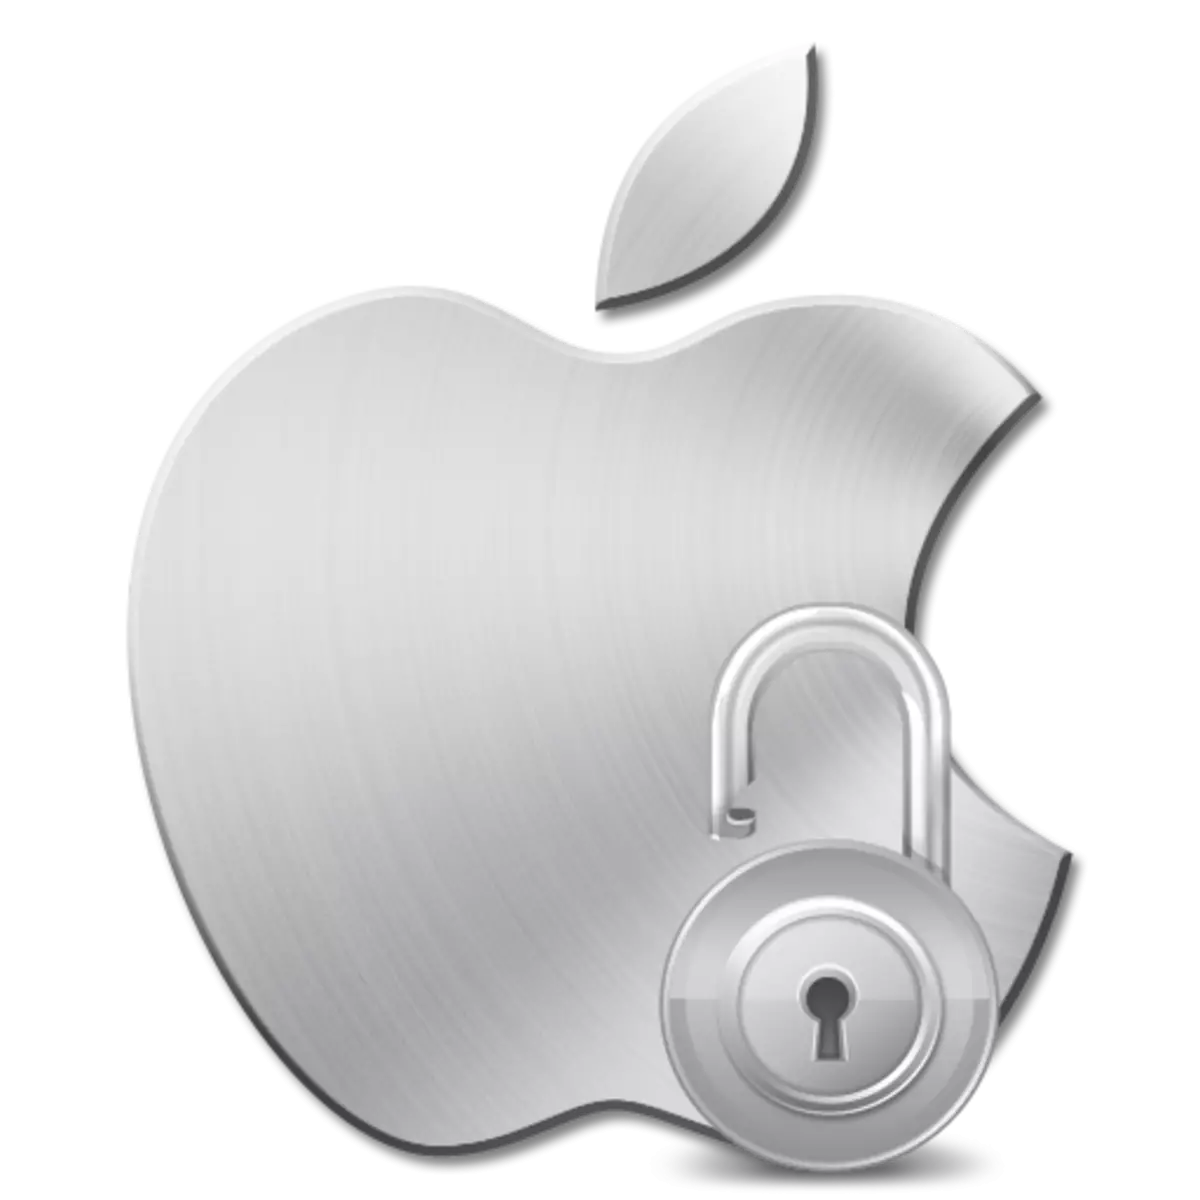 Apple ID je blokiran z varnostnimi razlogi: kaj storiti?